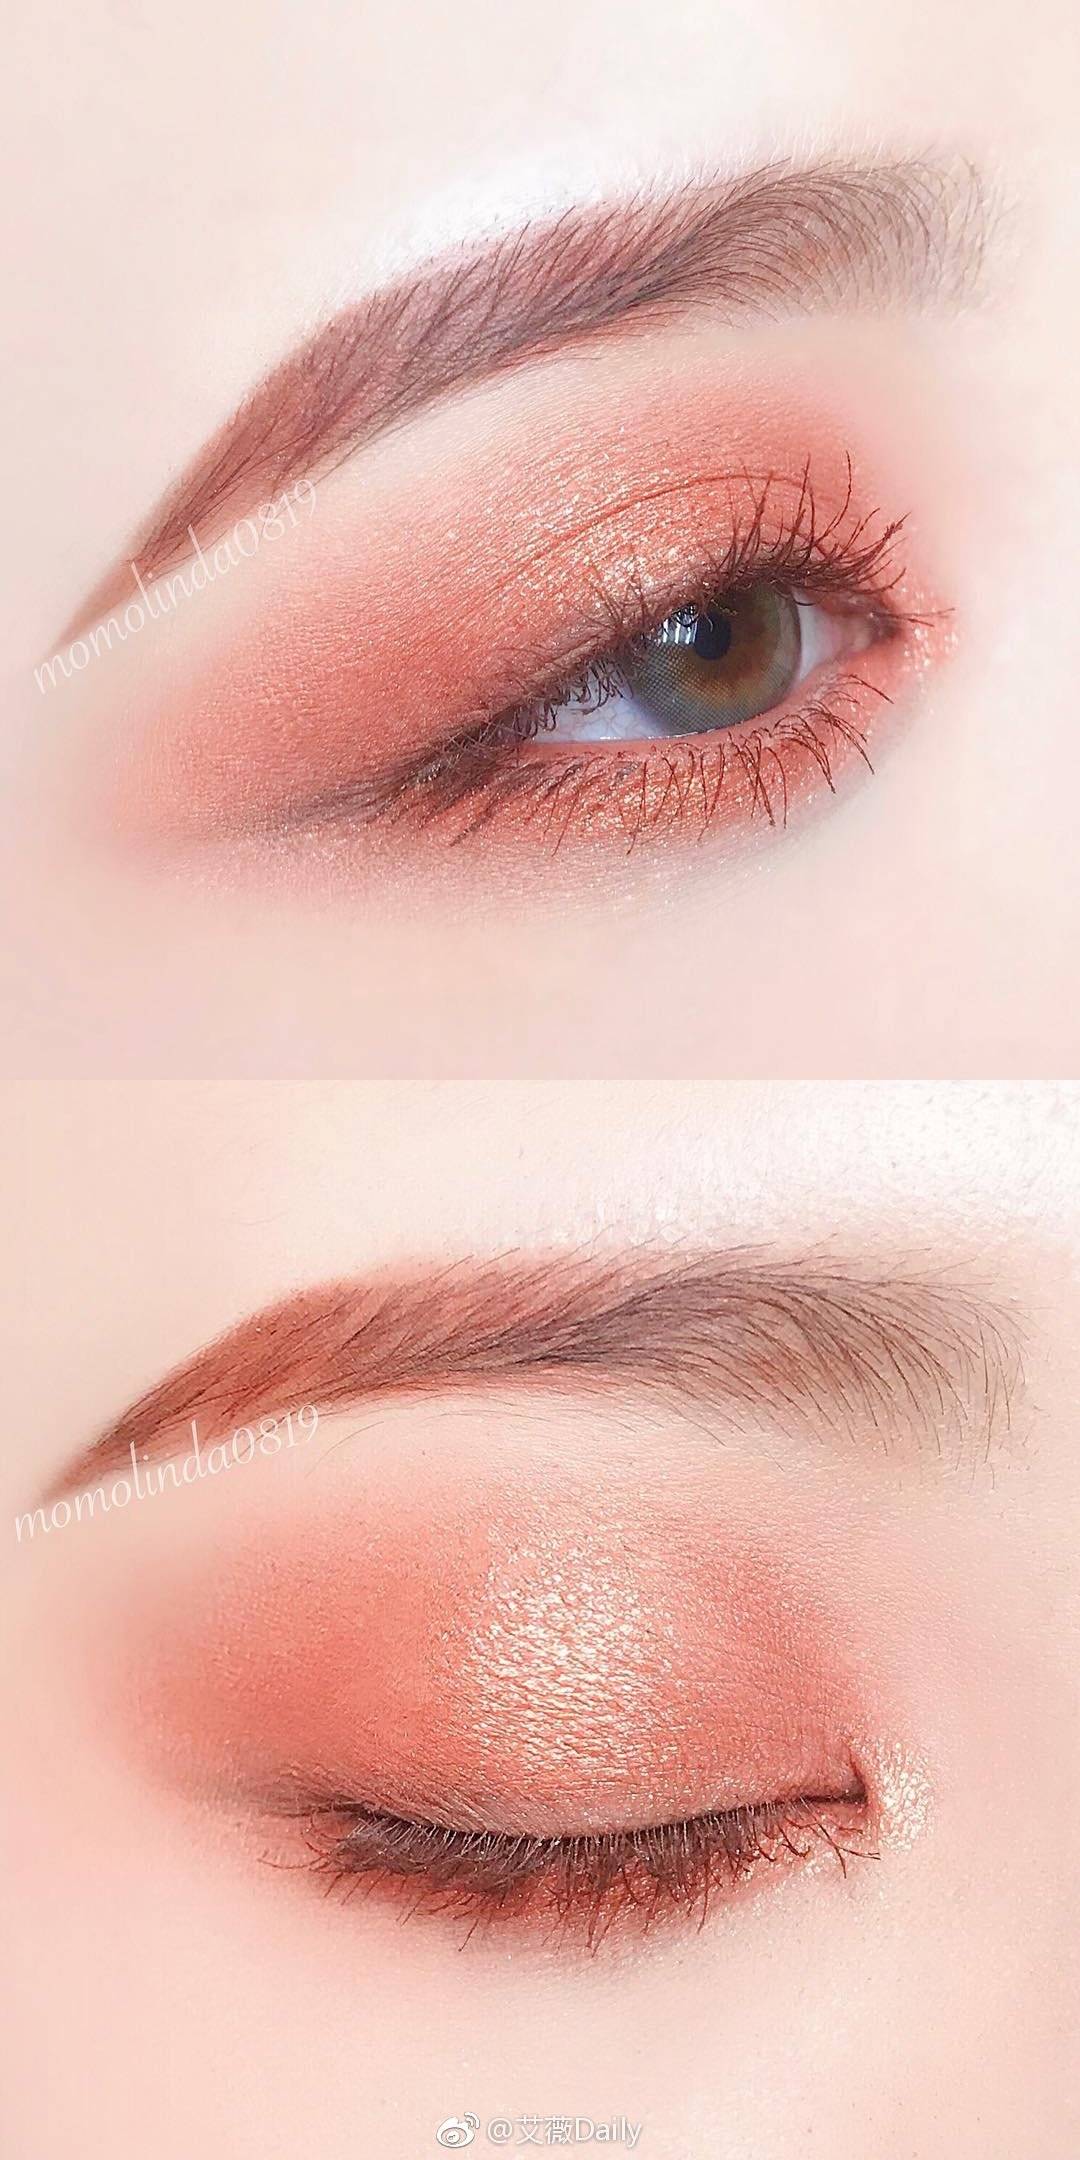 「3枚美貌眼妆配色参考」眼影配色叠加顺序步骤 1.珊瑚橘棕/2.